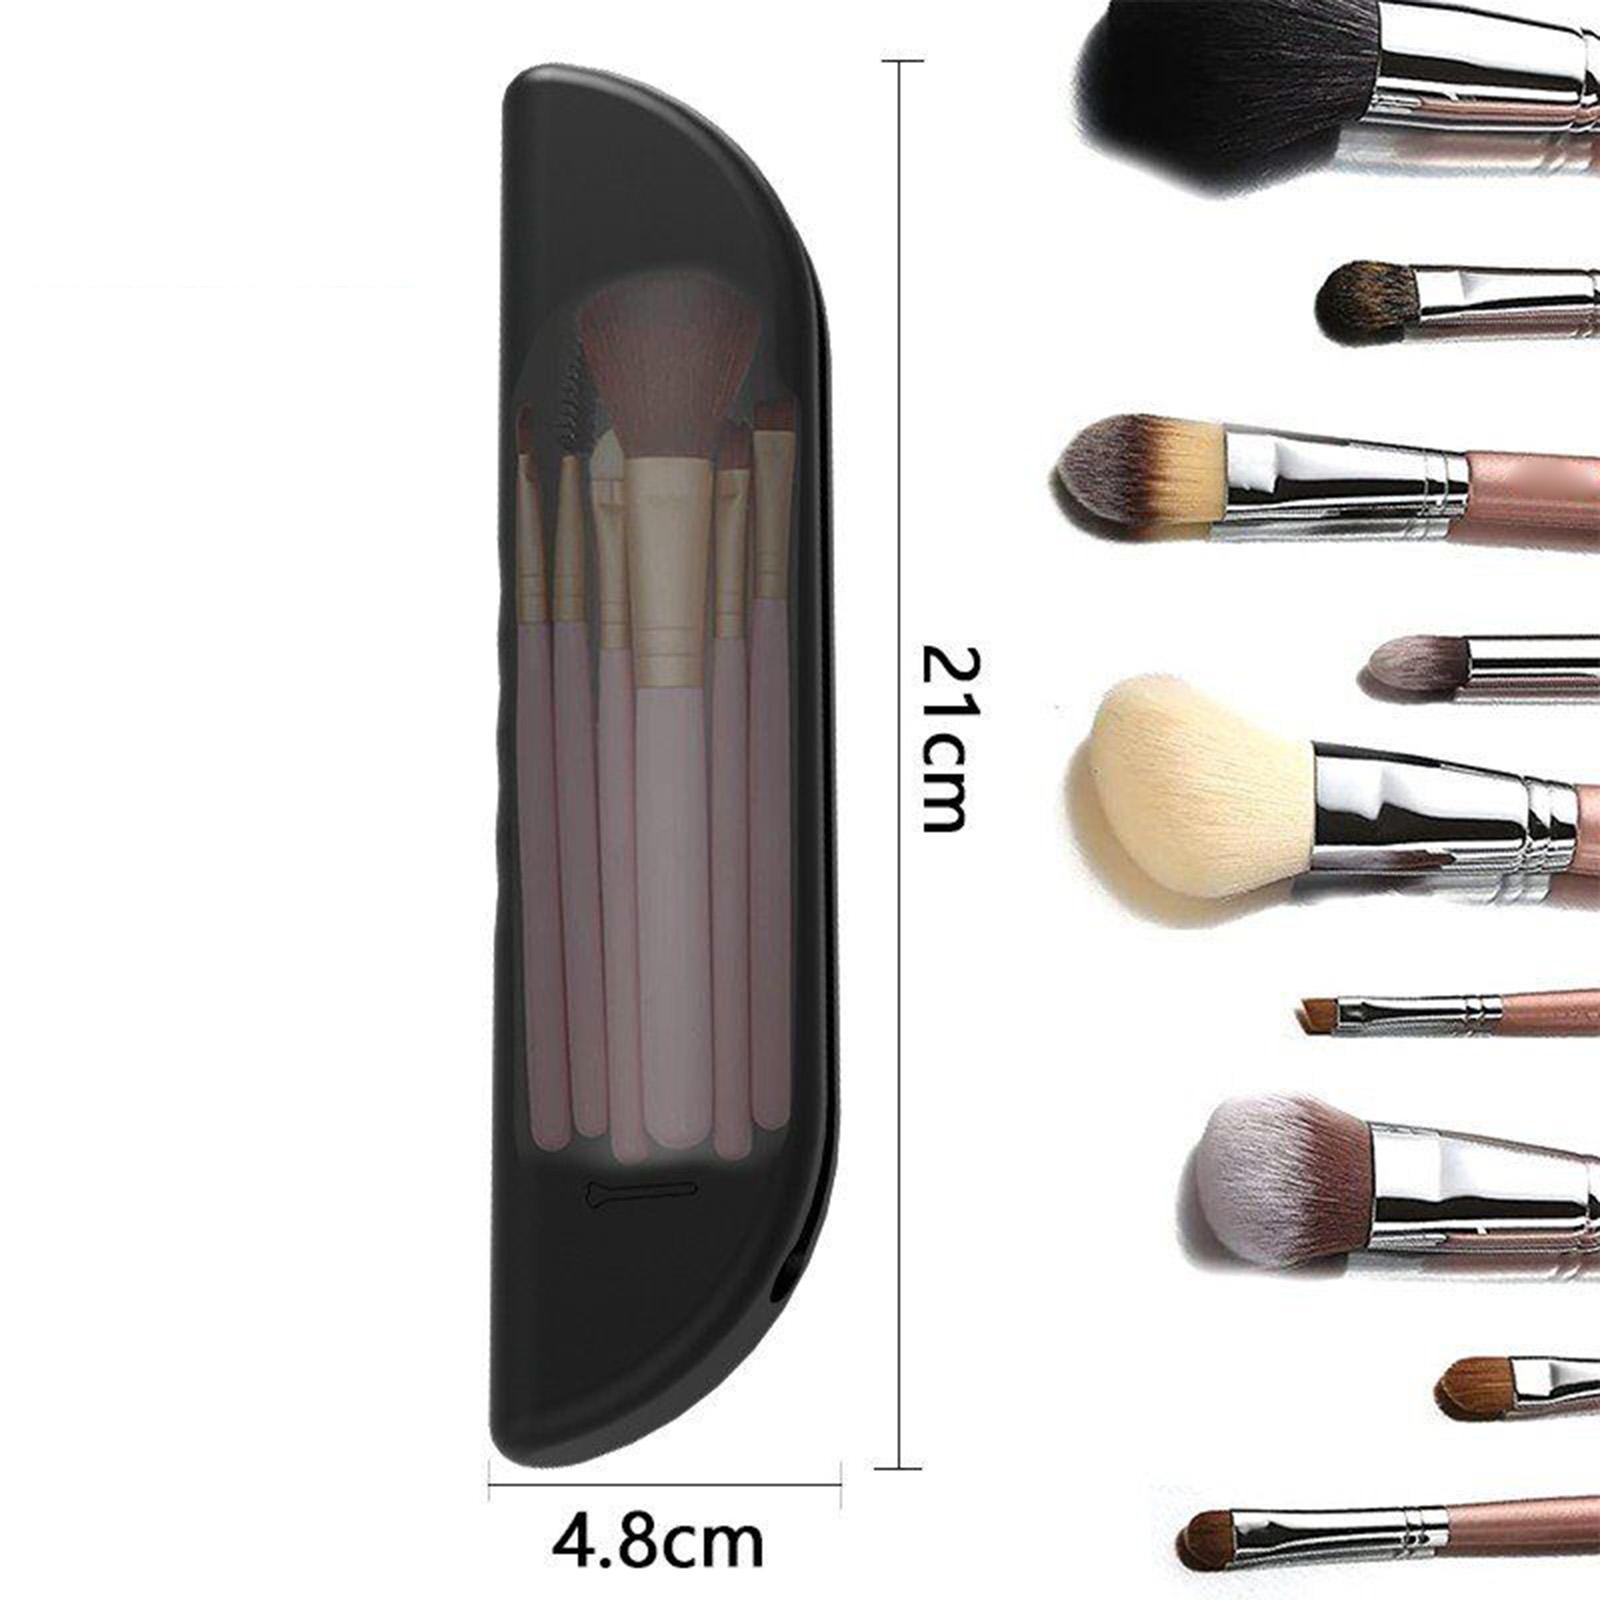 2Pcs Portable Makeup Brush Holder Soft Silicone Travel Brushes Organizer